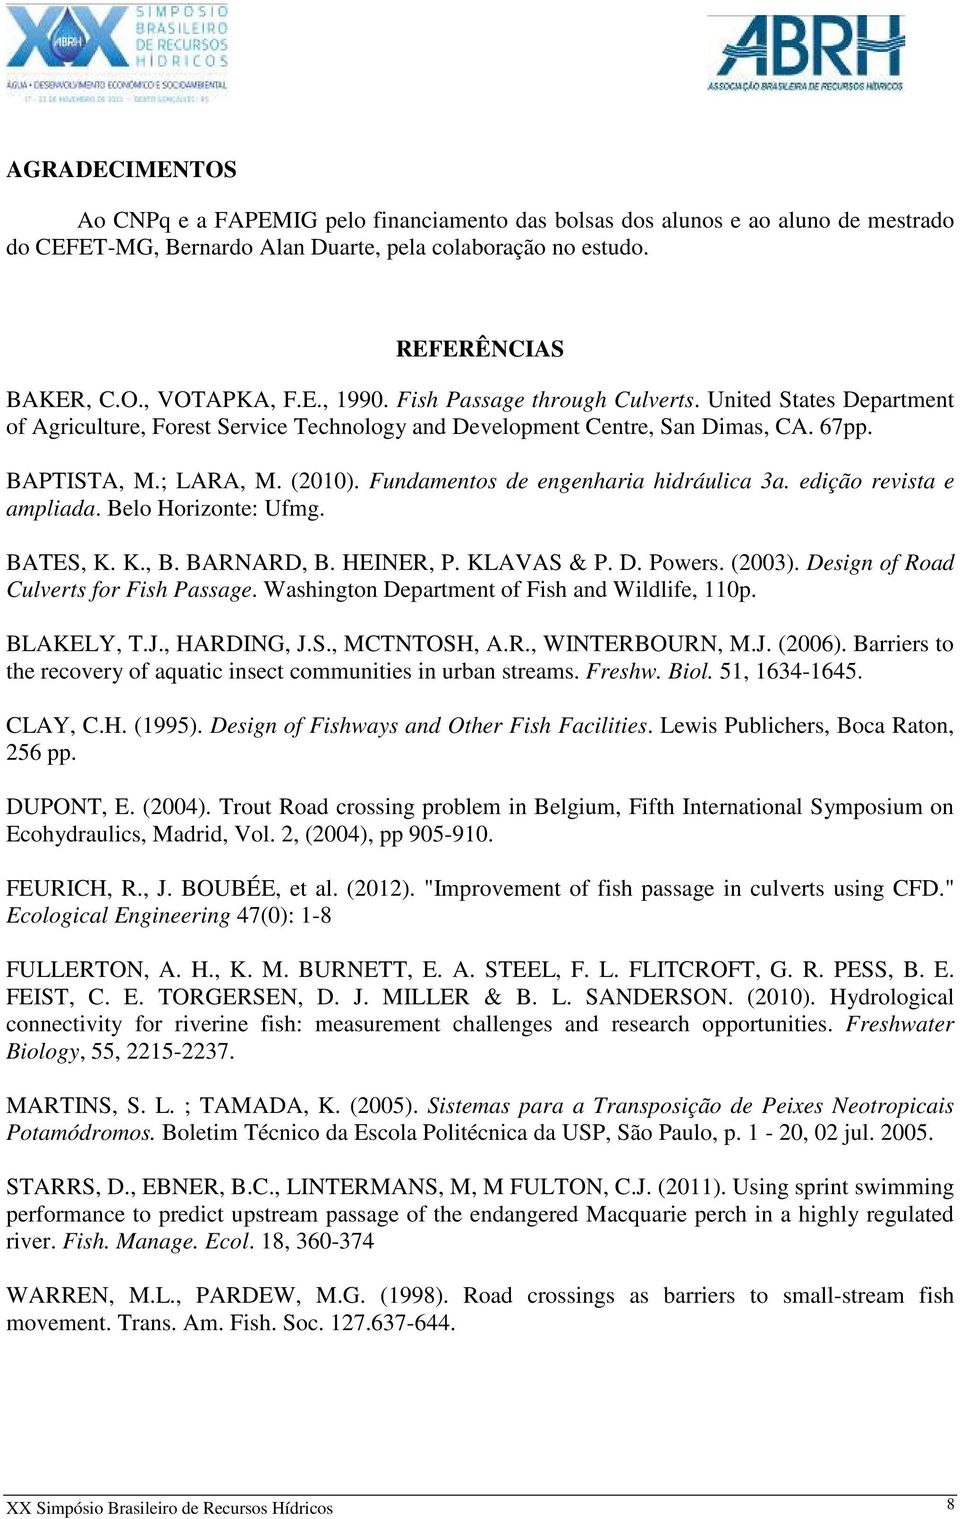 Fundamentos de engenharia hidráulica 3a. edição revista e ampliada. Belo Horizonte: Ufmg. BATES, K. K., B. BARNARD, B. HEINER, P. KLAVAS & P. D. Powers. (2003).